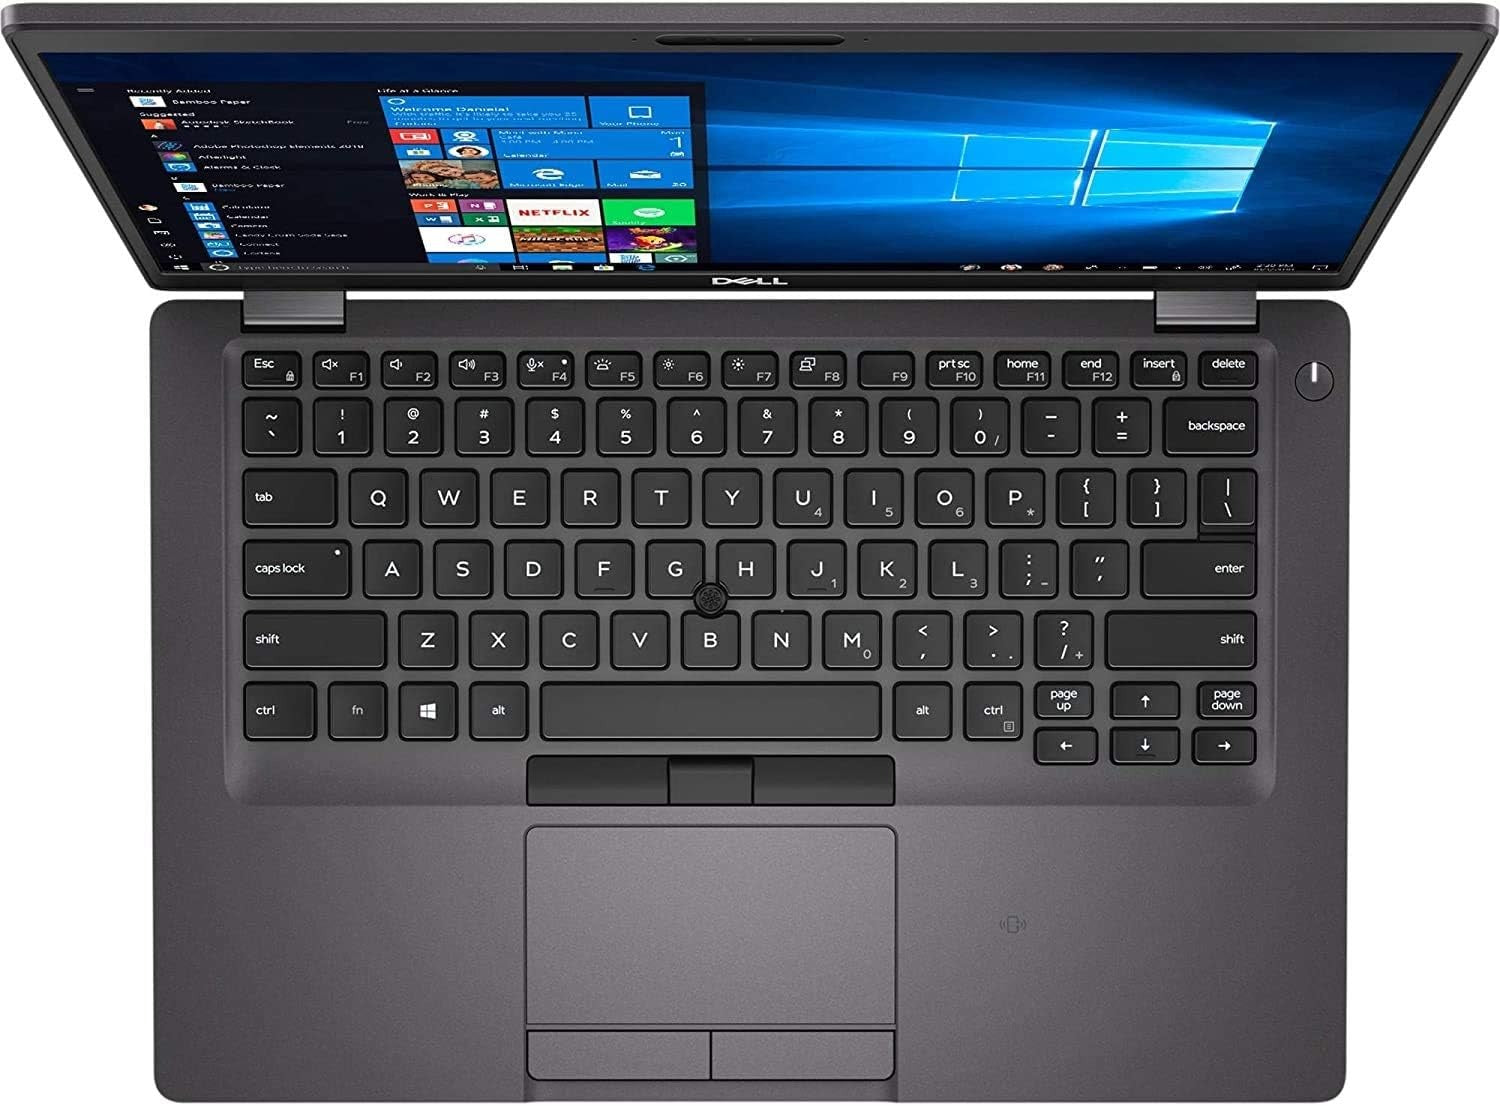 Dell- Latitude 5400 Business Laptop, 14 Fhd (1920 X 1080) Non-Touch, Intel Core 8Th Gen i5-8350U, 16Gb Ram, 256Gb Ssd, Windows 10 Pro